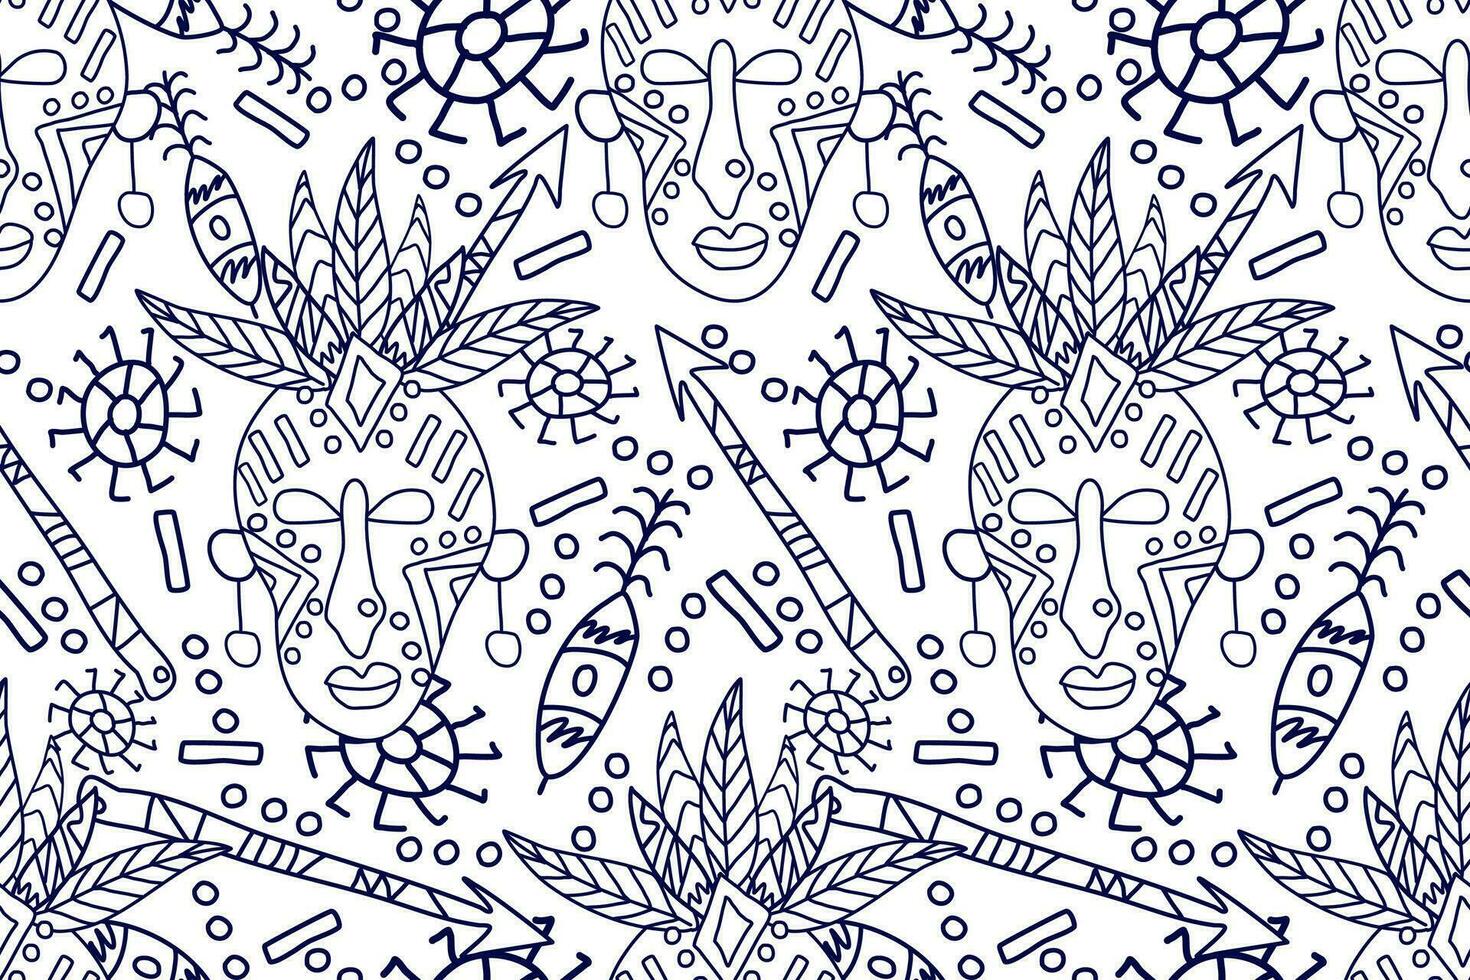 africano desatado padrão.azul e branco plano de fundo. asteca estilo abstrato vetor ilustração.design para textura, tecido, roupas, embrulho, decoração.africano rabisco arte padronizar.